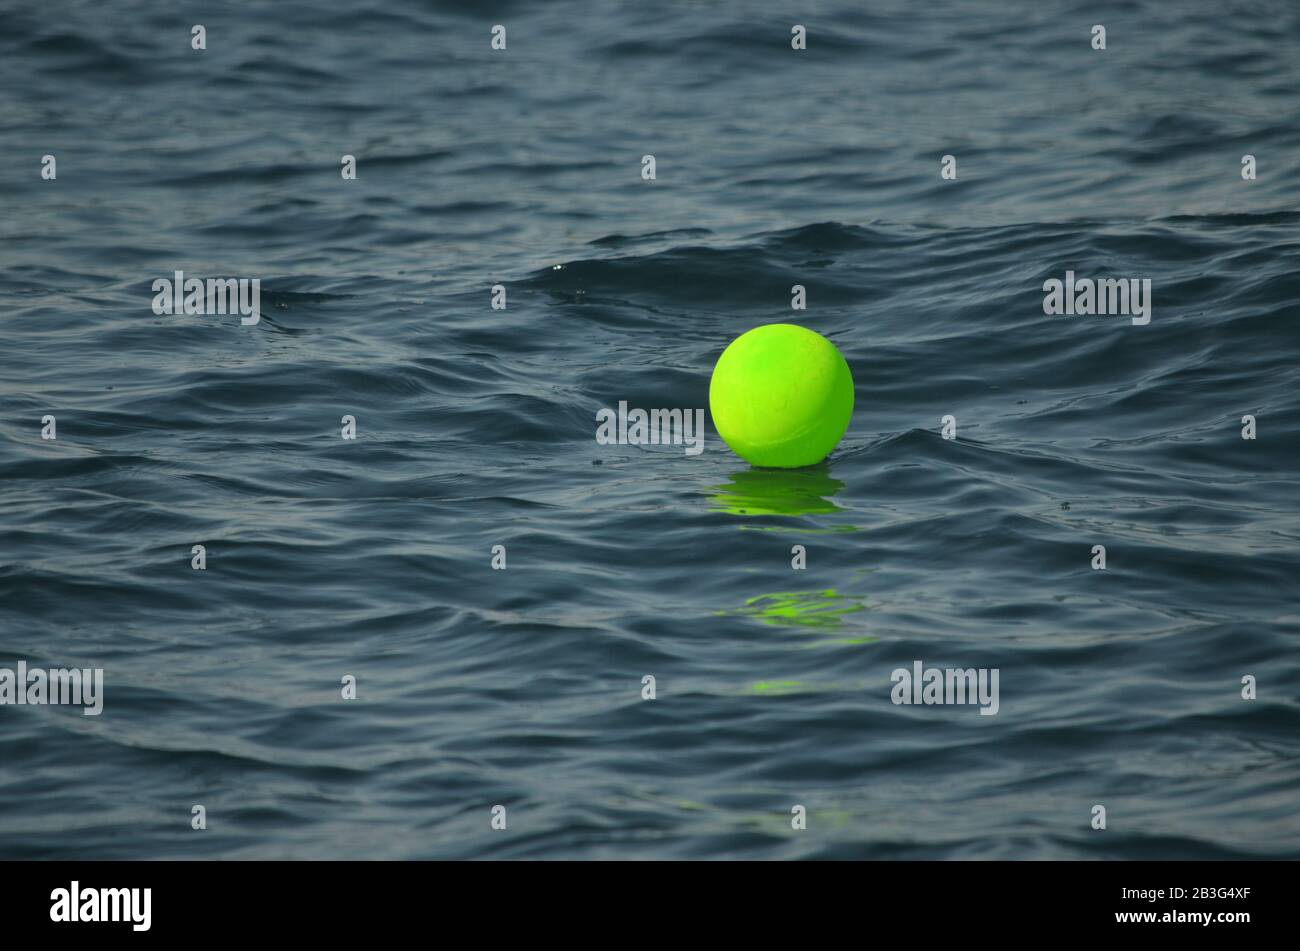 Globo de helio verde neón flotando en el Océano Atlántico. Los globos y otros plásticos pueden dañar la vida marina por ingestión o enredamiento. Foto de stock